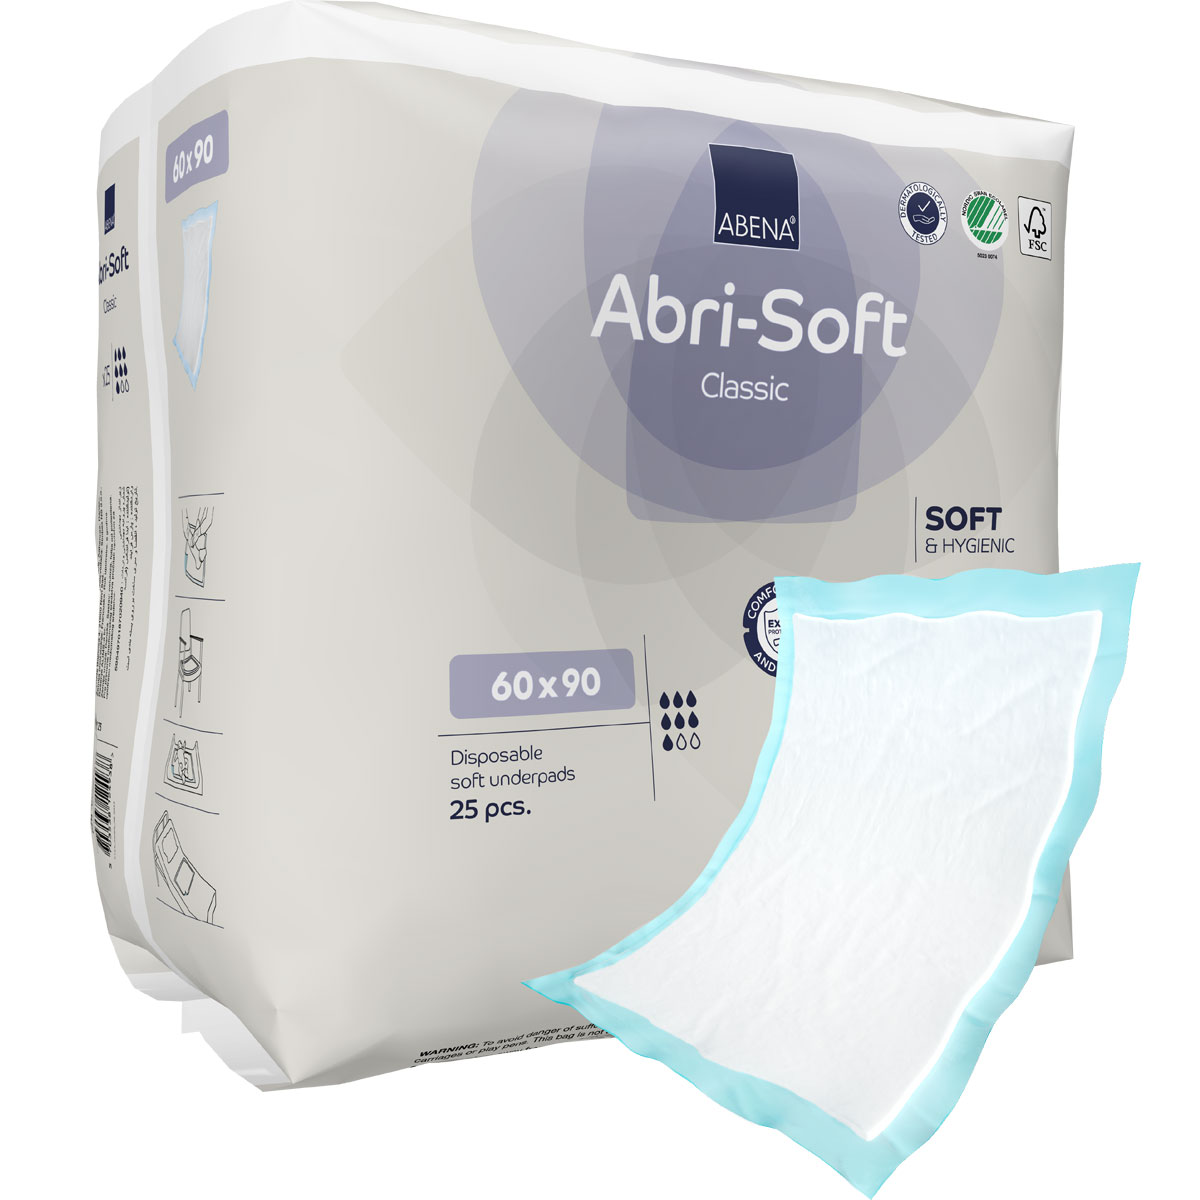 ABENA Abri-Soft CLASSIC Betteinlagen 60 x 90cm (25 Stück Einzelpackung)